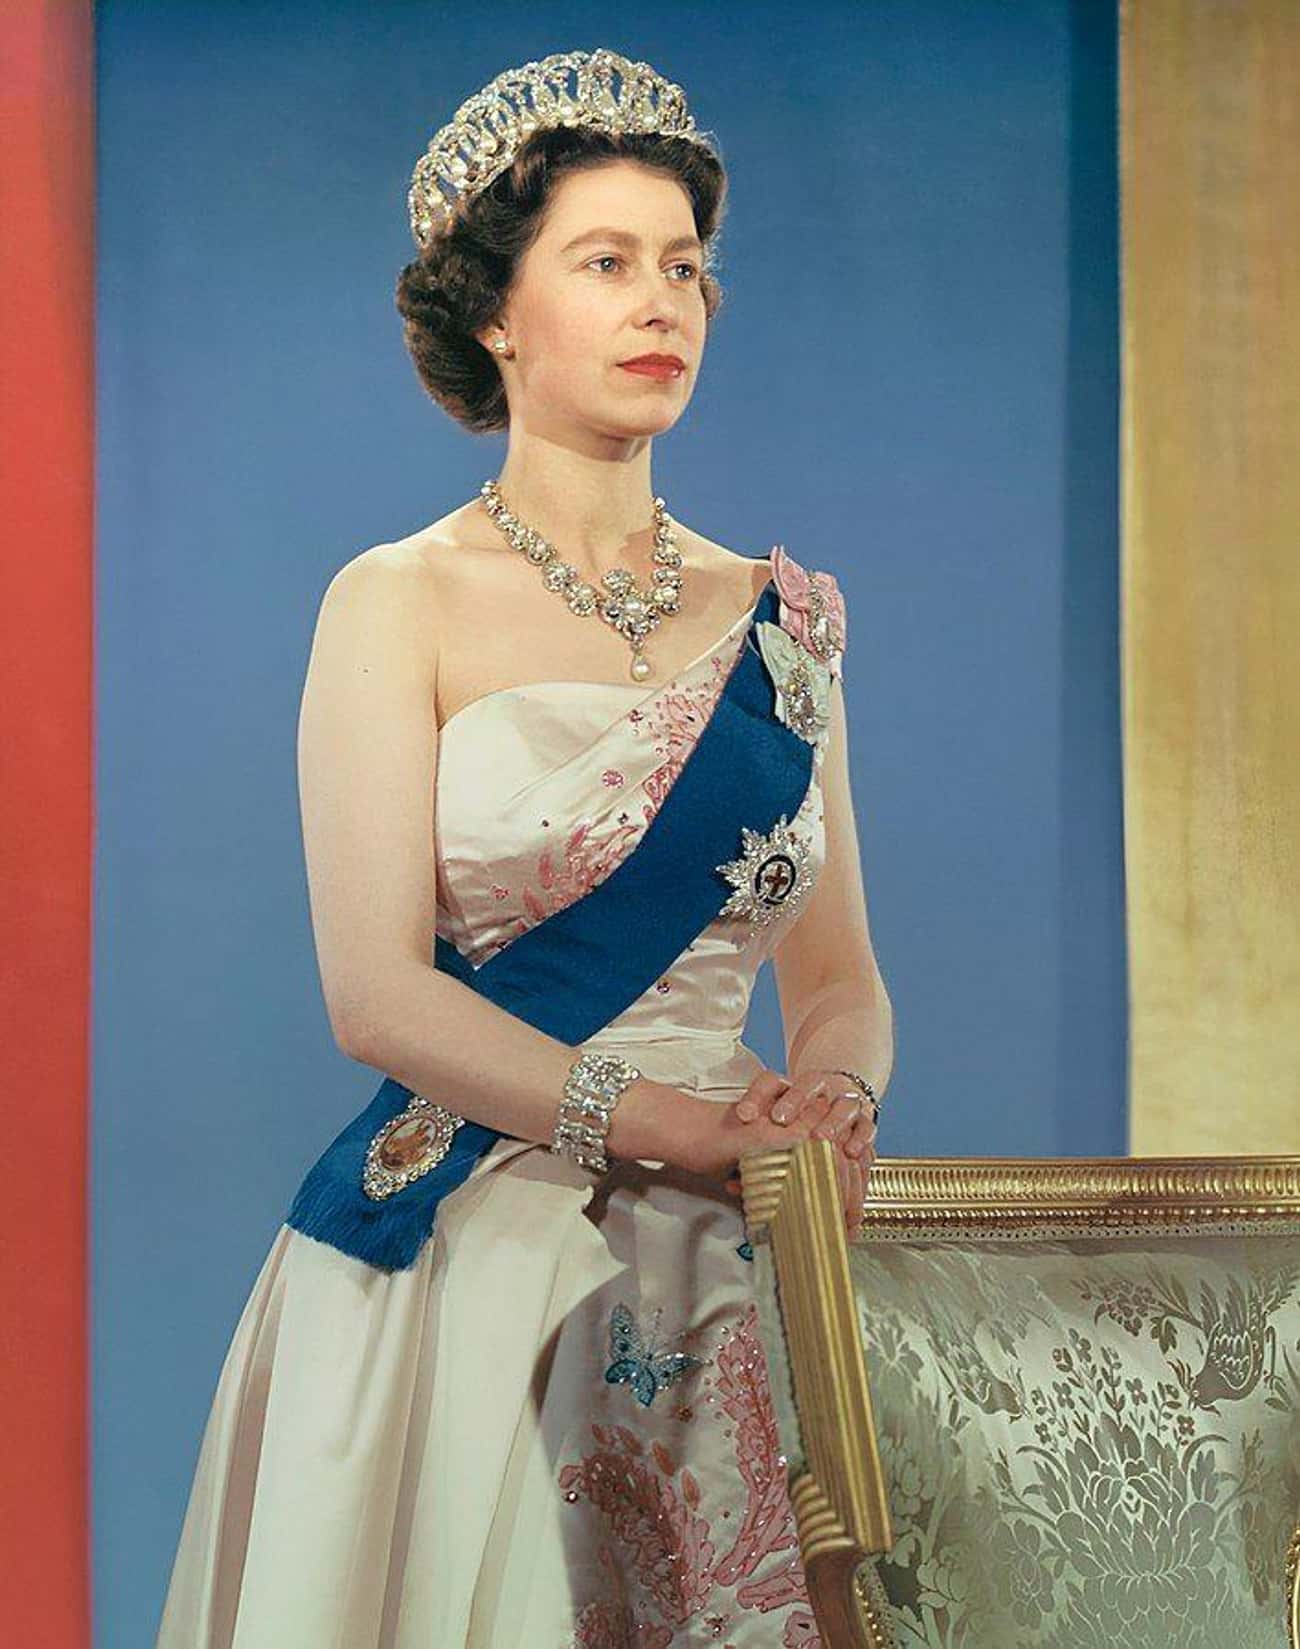 Queen Elizabeth II's Drop Scones 